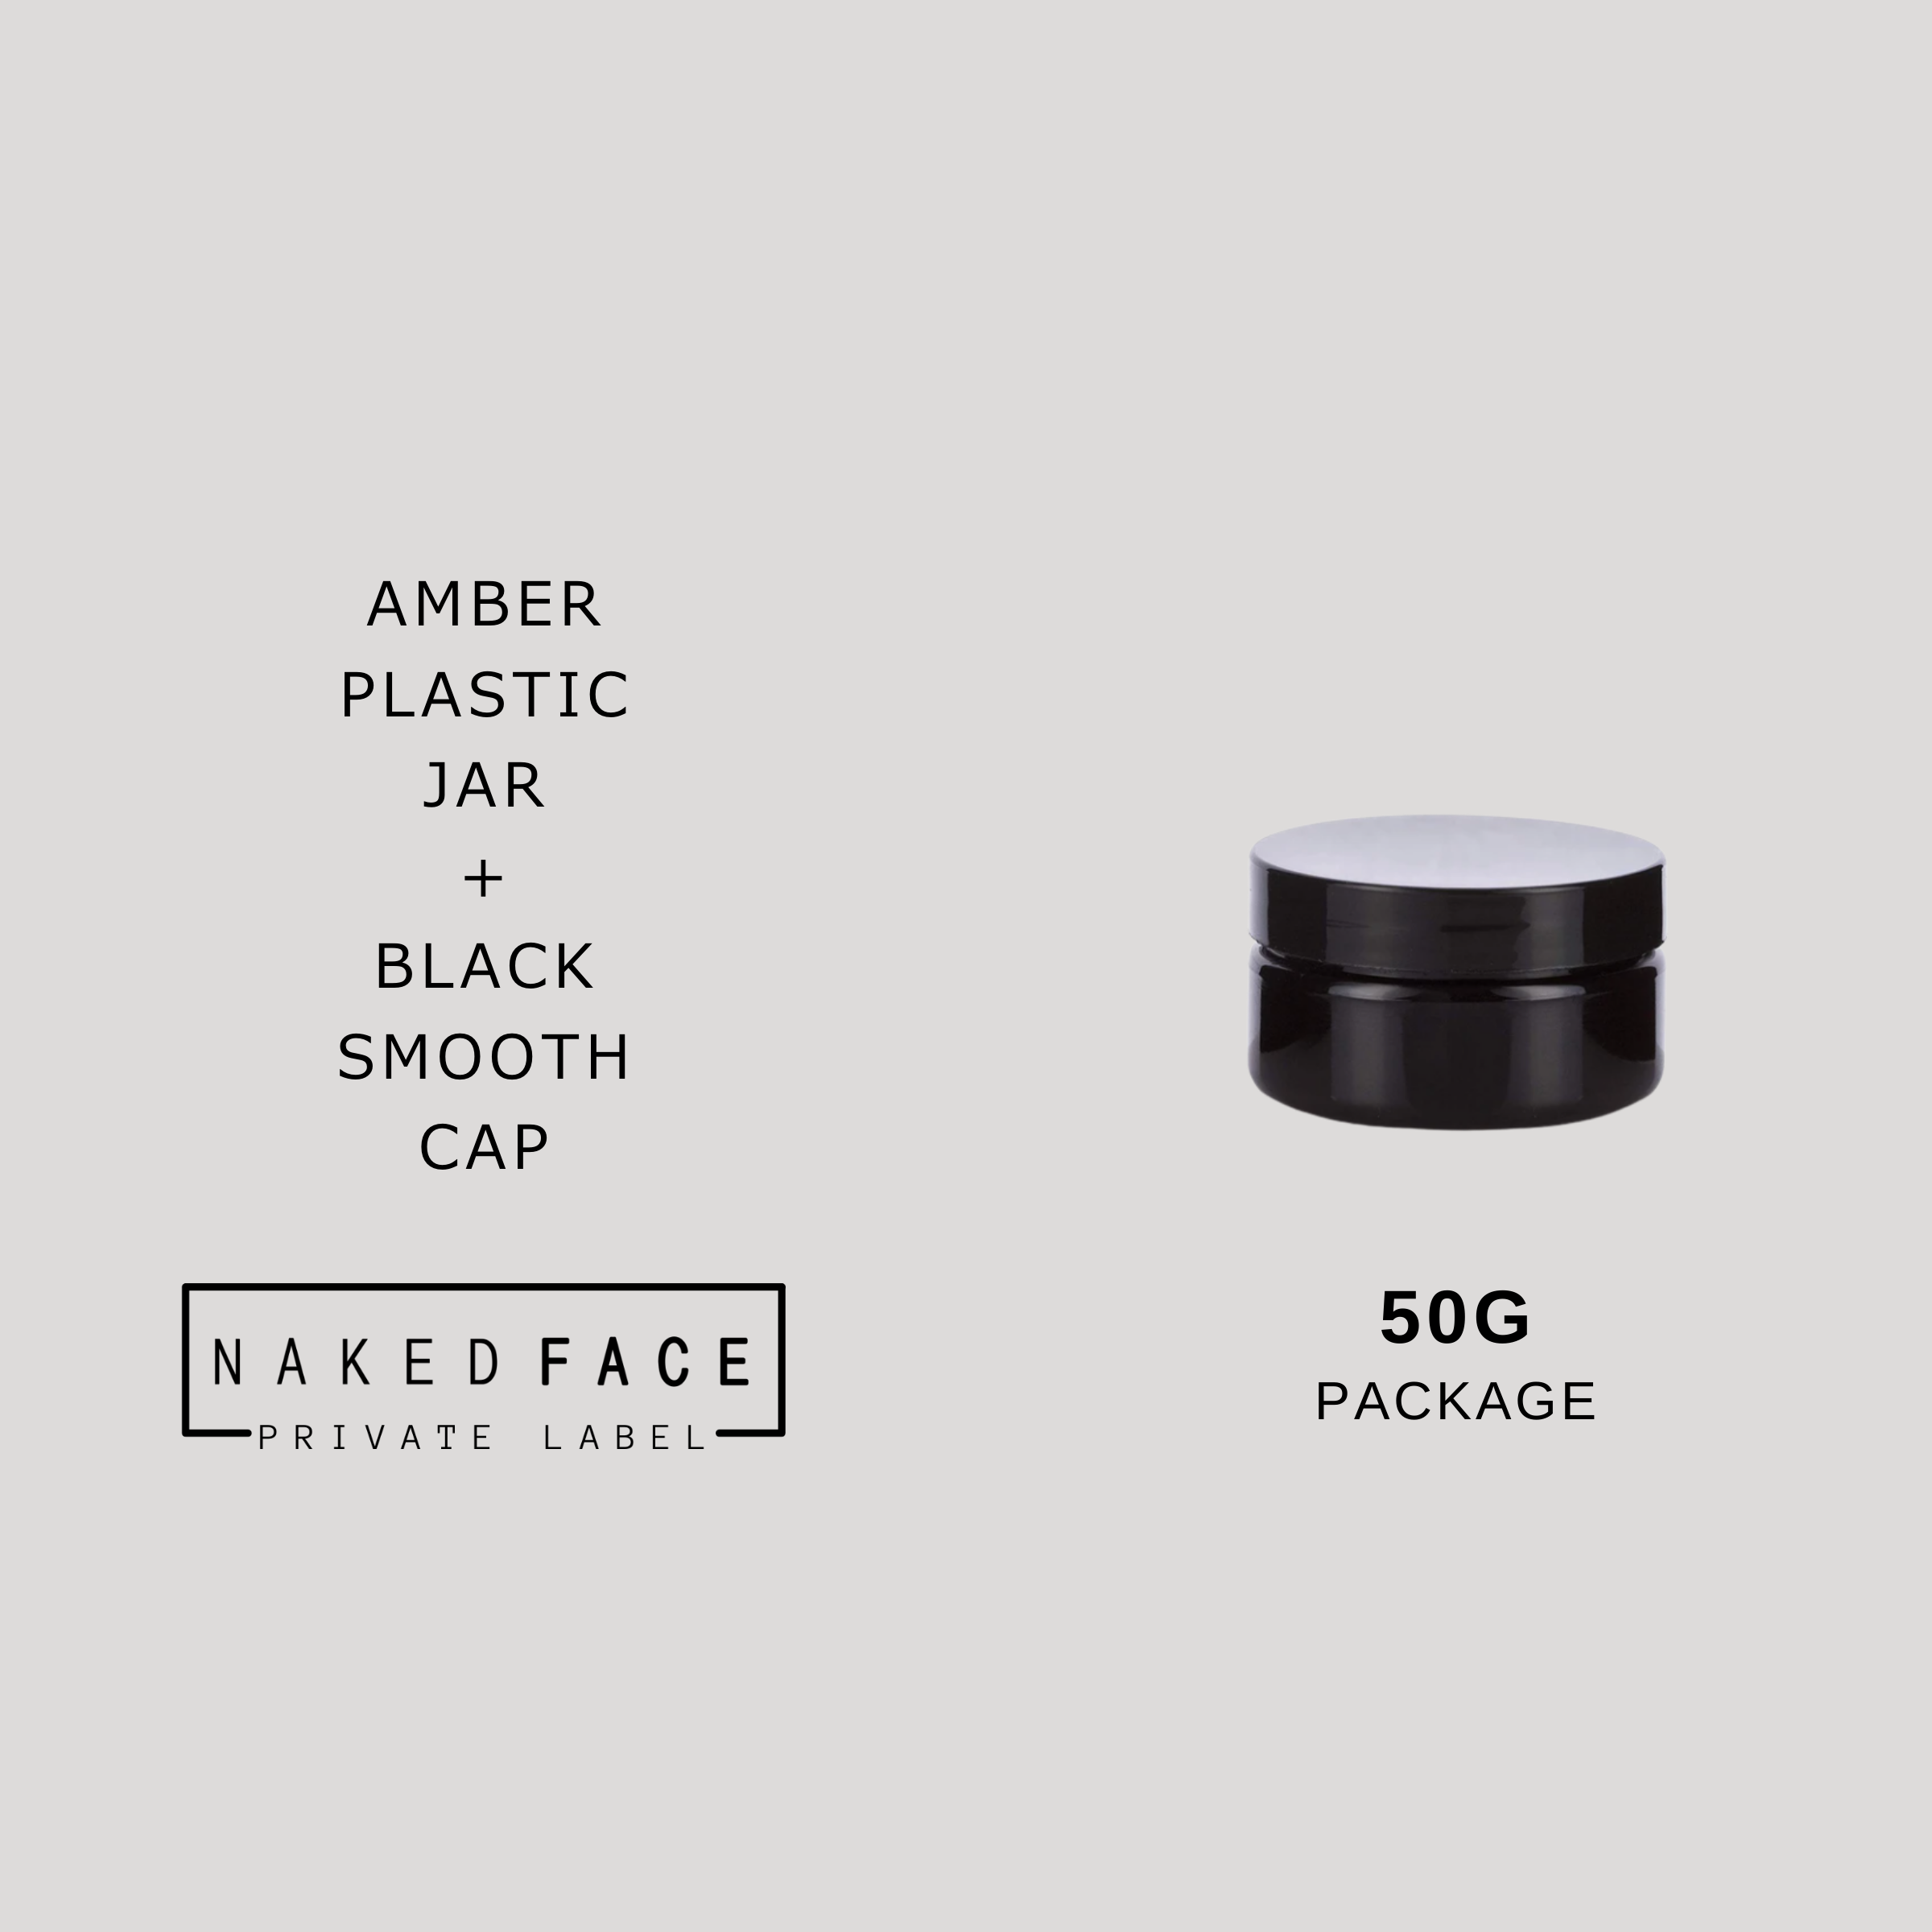 PACKAGE- 50g Black Jar + Black Smooth Cap